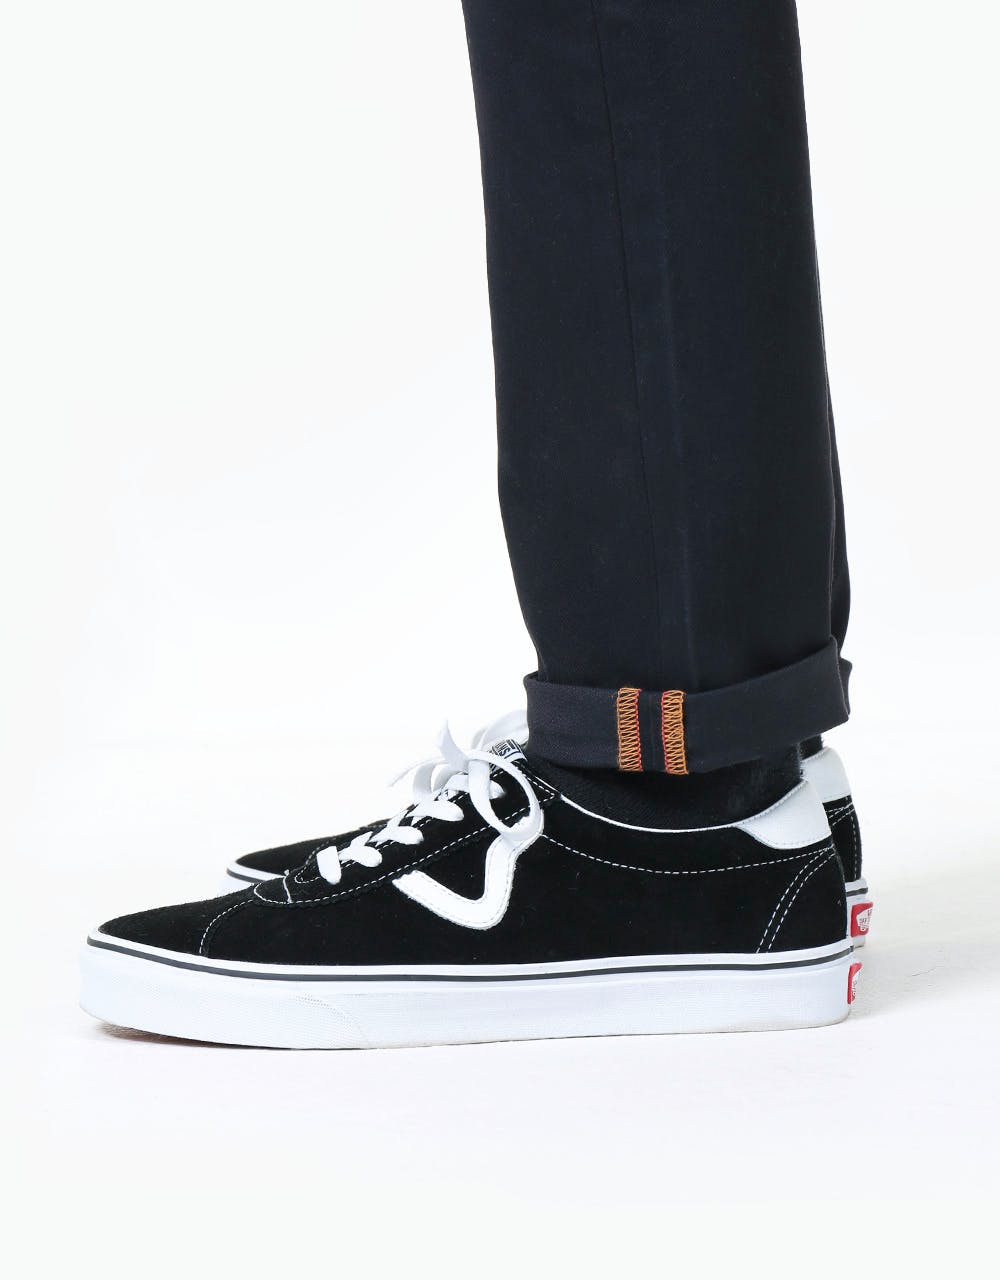 Levi's Skateboarding 512 Slim Taper Denim Jeans - Caviar